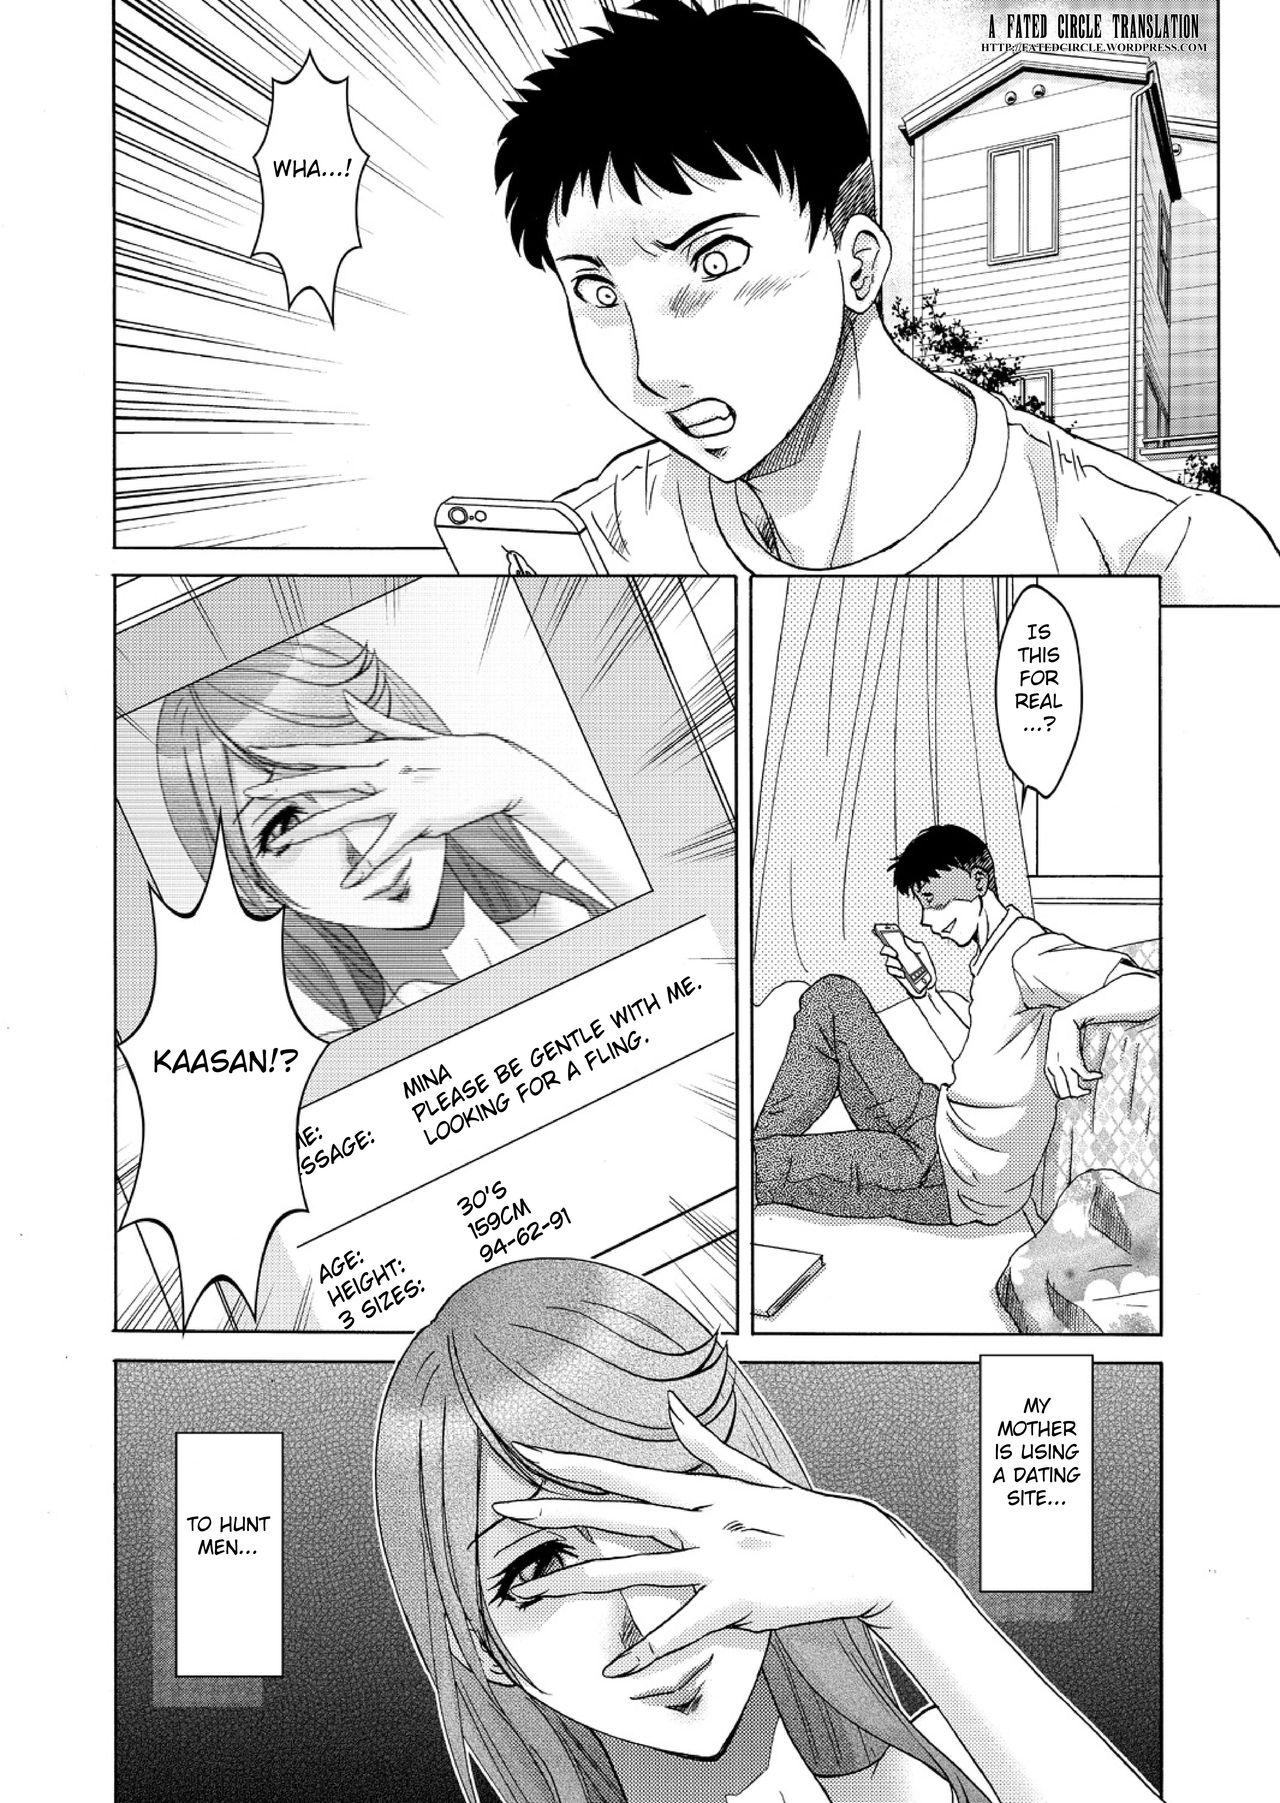 Gaysex Musuko-tachi no Haha Asobi 18 Year Old - Page 2